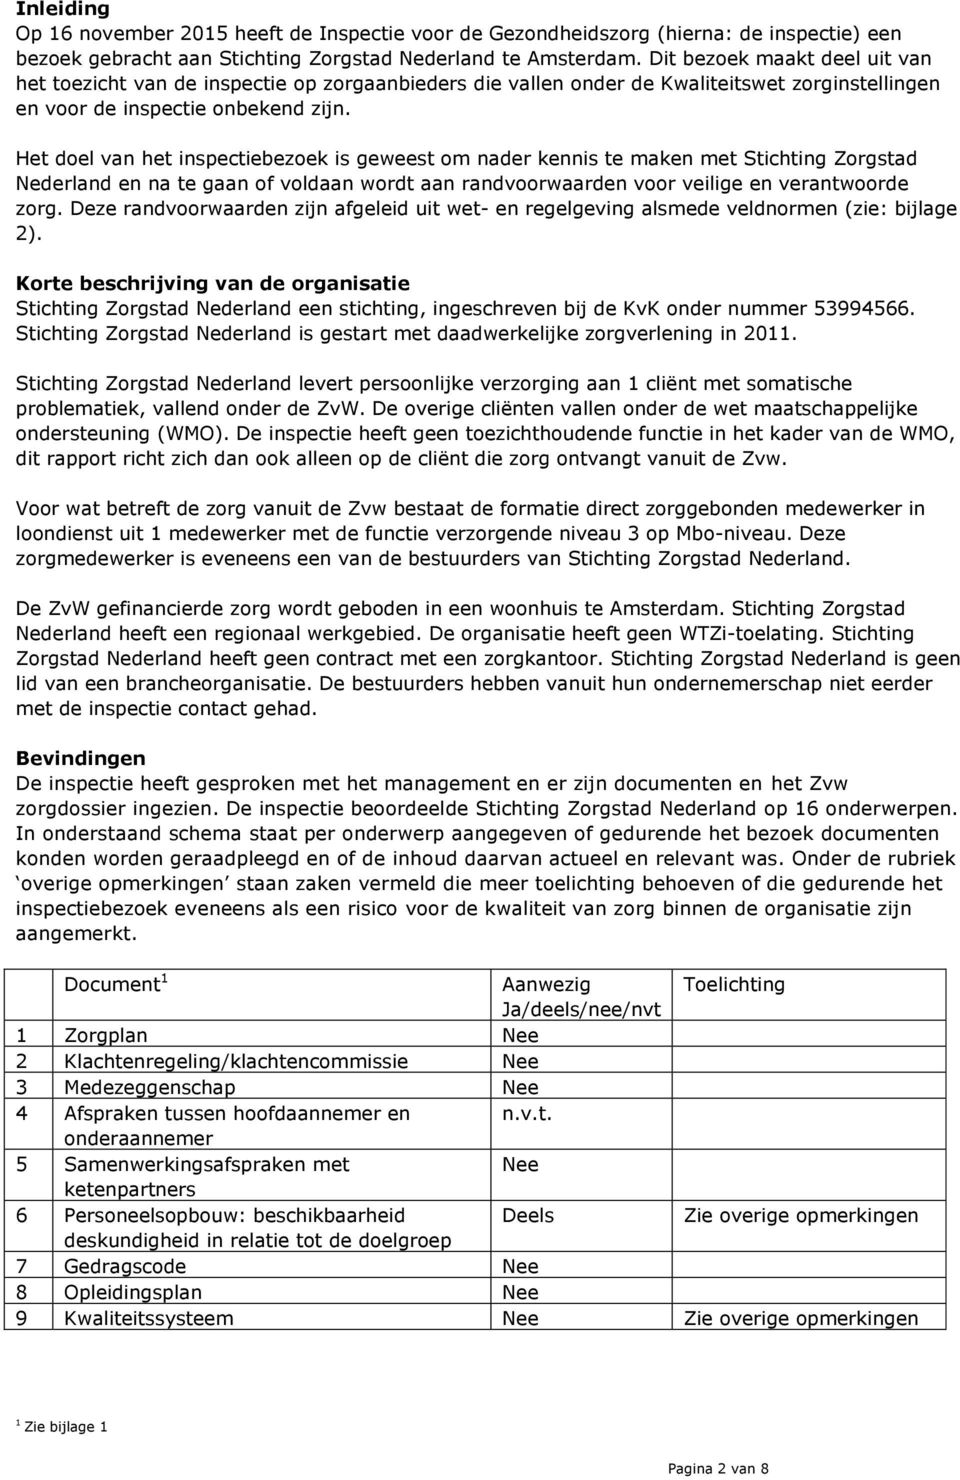 Het doel van het inspectiebezoek is geweest om nader kennis te maken met Stichting Zorgstad Nederland en na te gaan of voldaan wordt aan randvoorwaarden voor veilige en verantwoorde zorg.